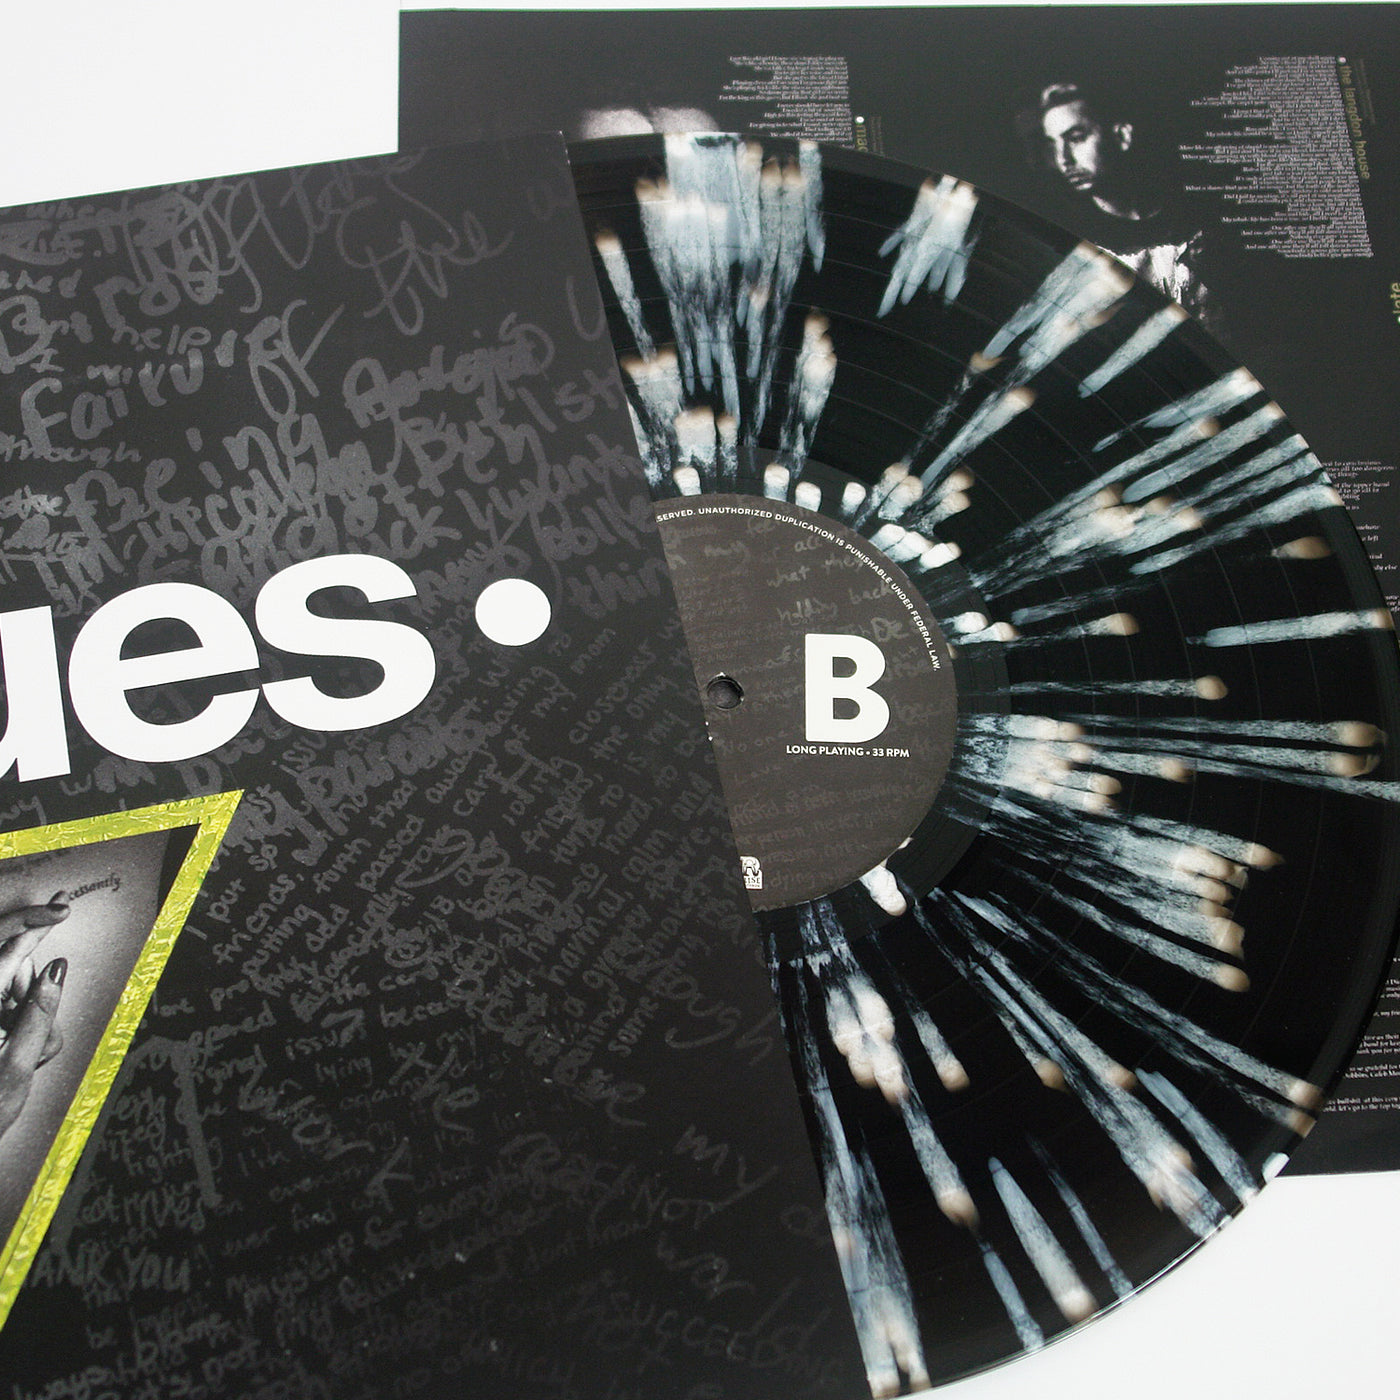 Issues Black Ice w/ White Splatter Vinyl